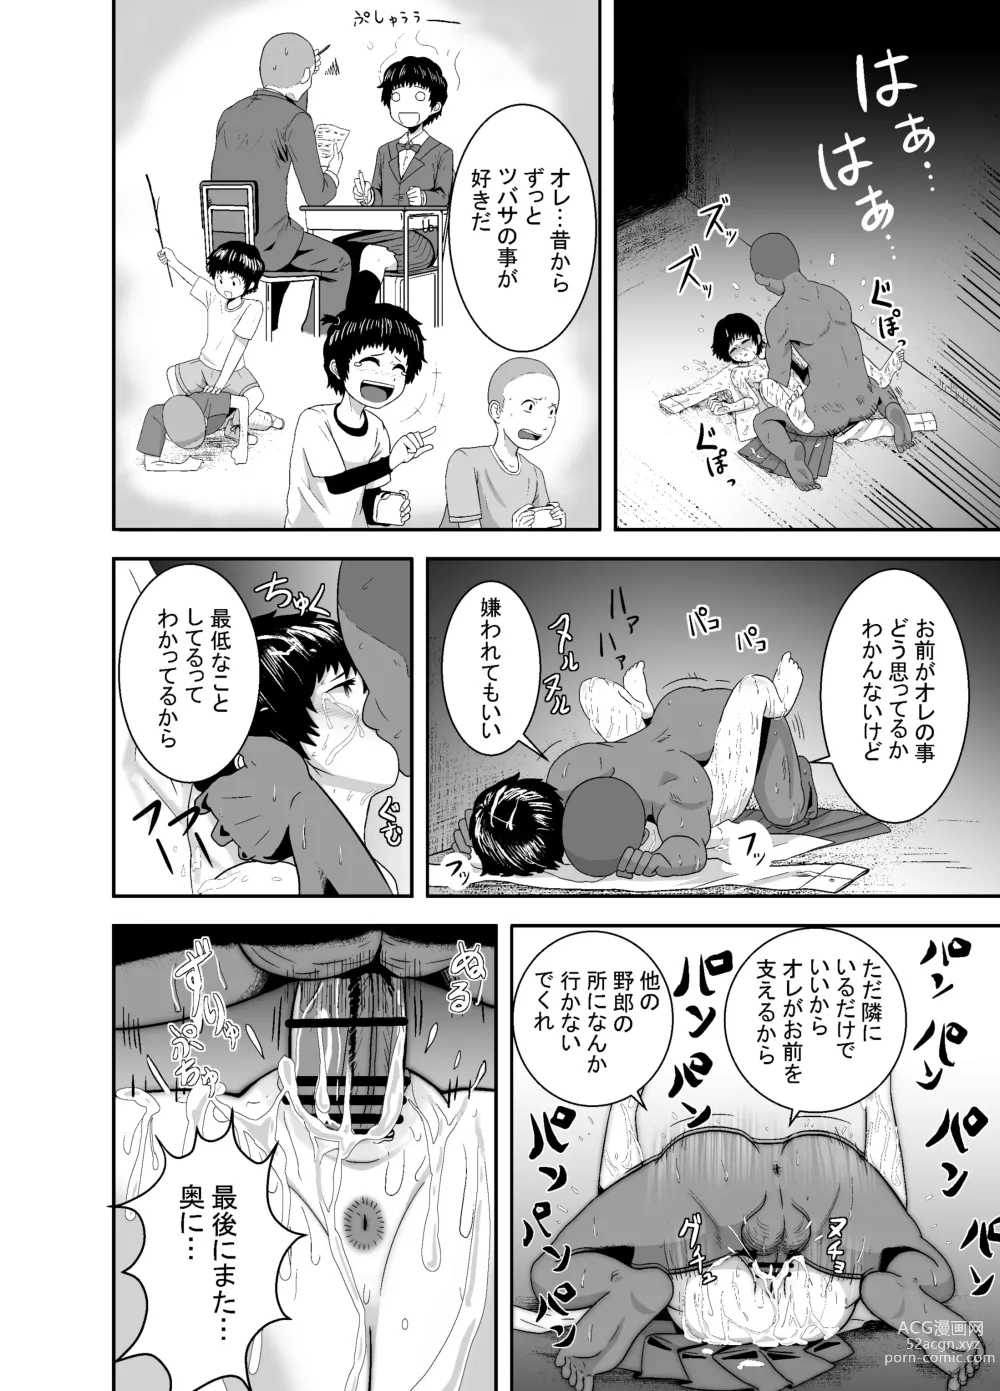 Page 51 of doujinshi Kimi ga Yarareru Kurai nara ~Genkikko Crisis~